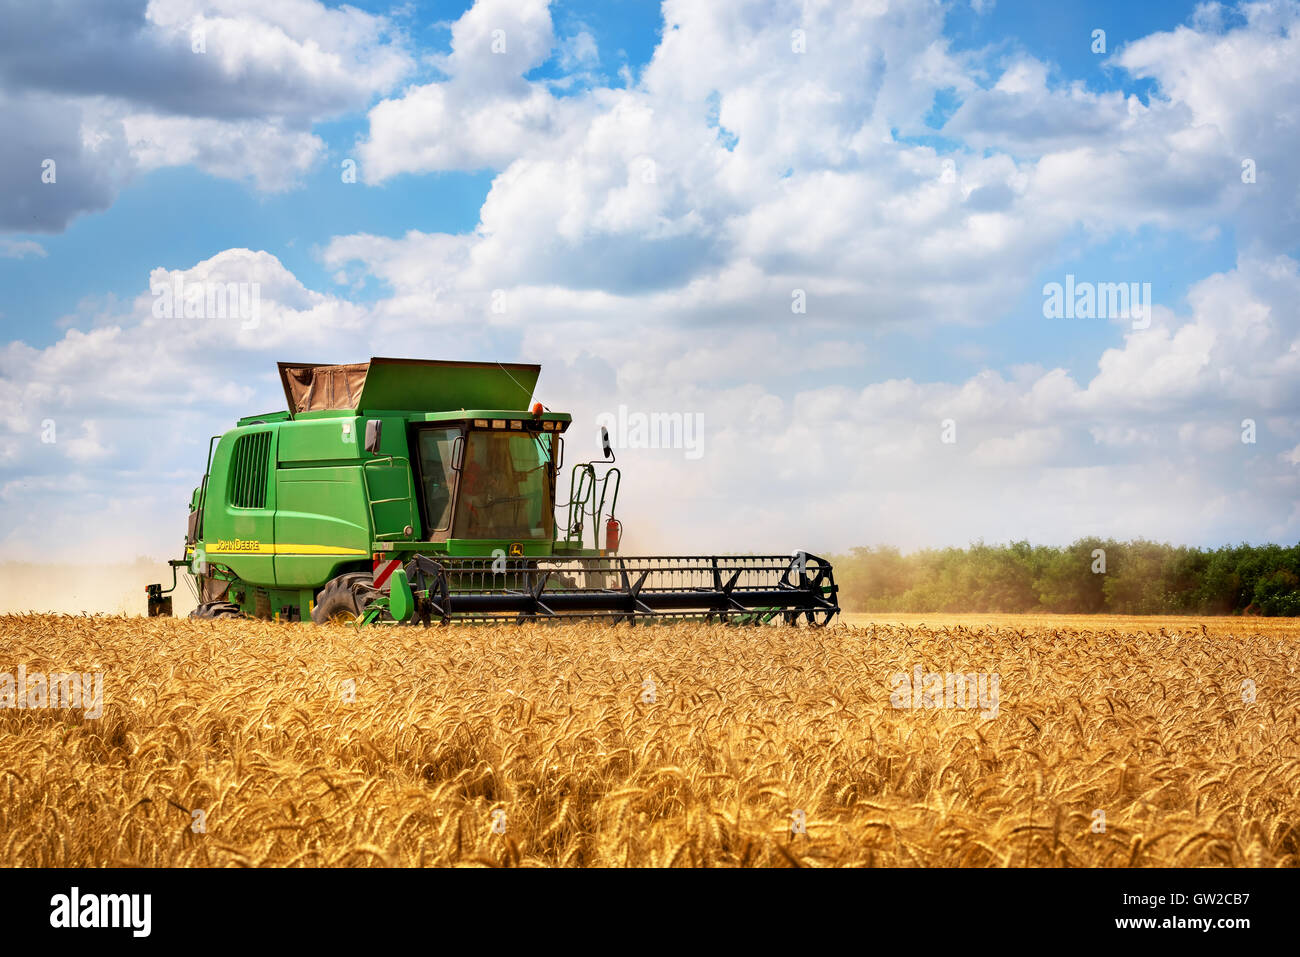 Dobrich, Bulgarien - Juli 08: Moderne John Deere Mähdrescher ernten Getreide im Feld in der Nähe der Stadt Dobrich, Bulagaria Juli 08 Stockfoto